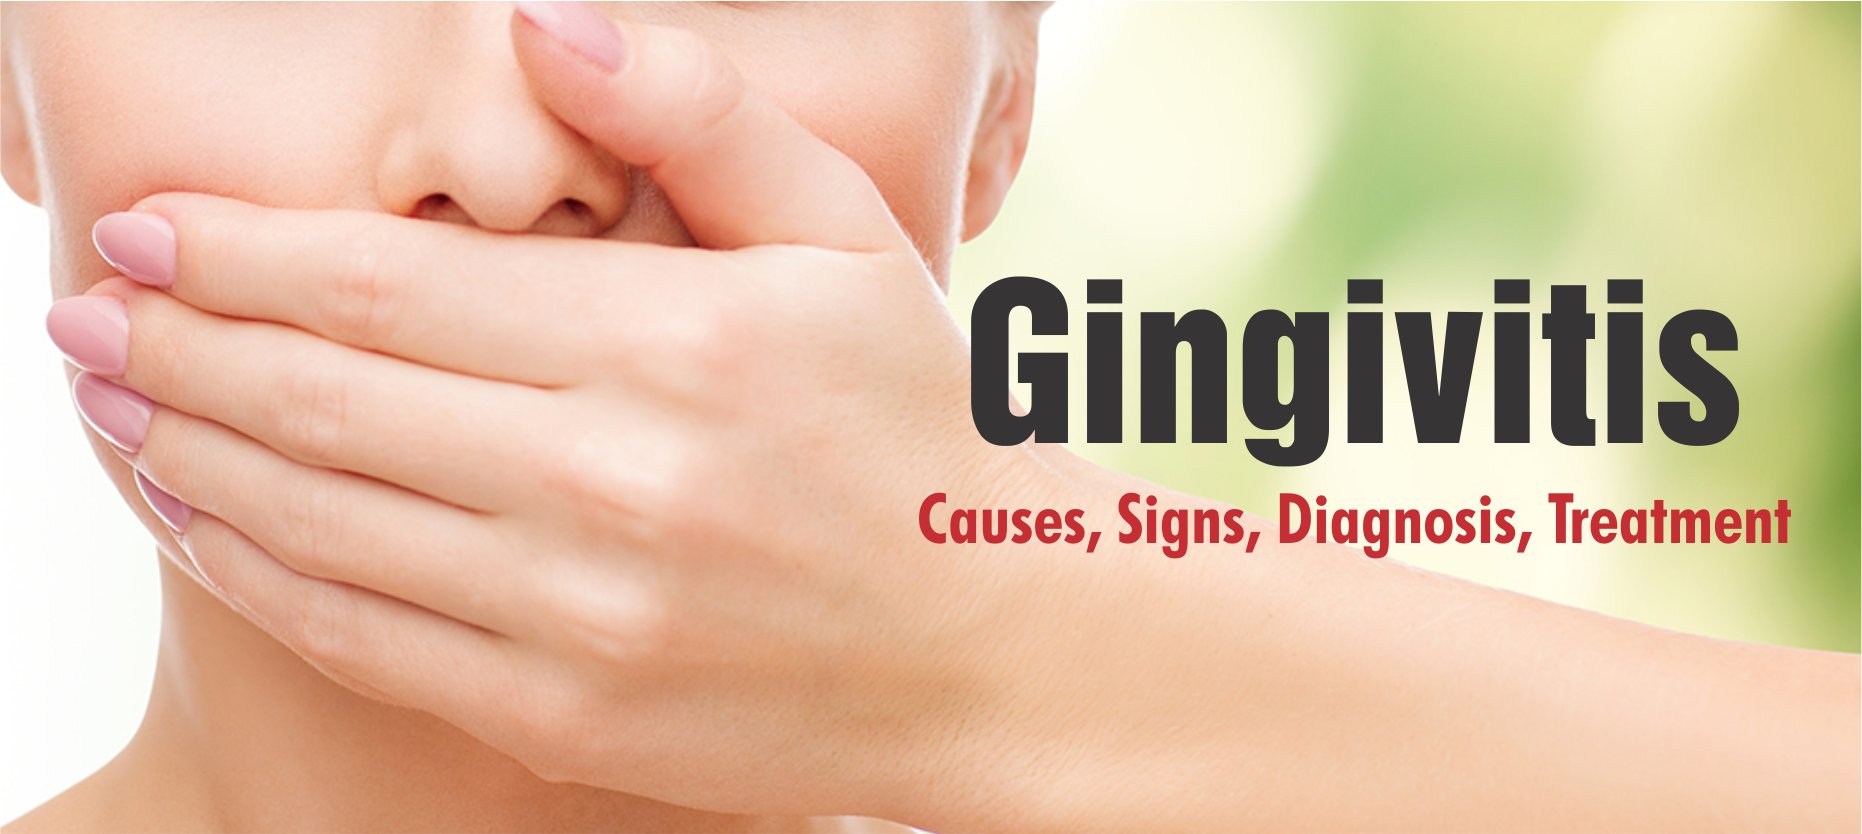 Gingivitis: Symptoms, Causes, Treatment